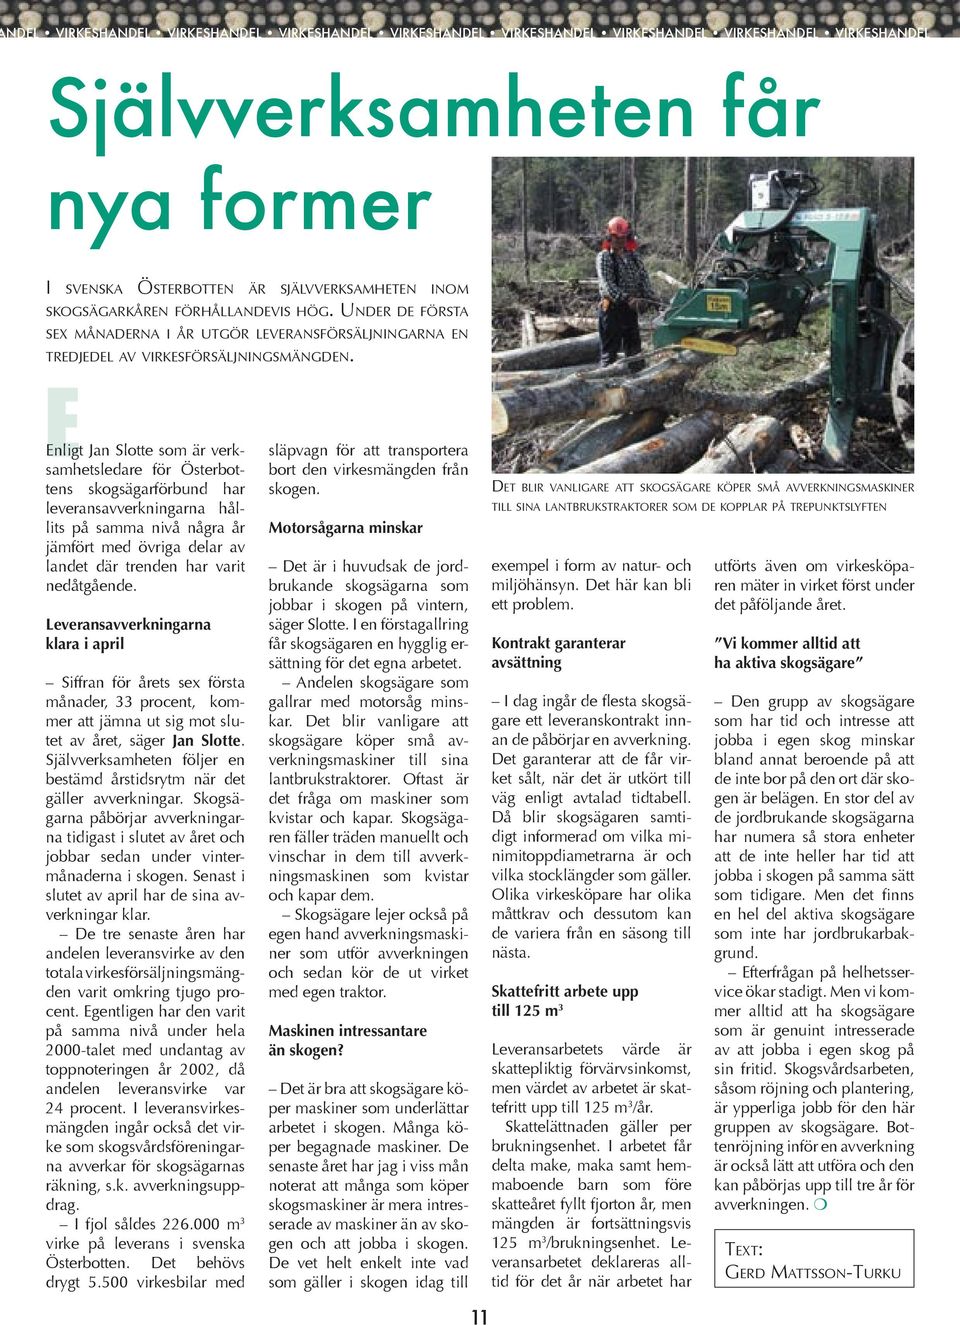 Enligt Jan Slotte som är verksamhetsledare för Österbottens skogsägarförbund har leveransavverkningarna hållits på samma nivå några år jämfört med övriga delar av landet där trenden har varit